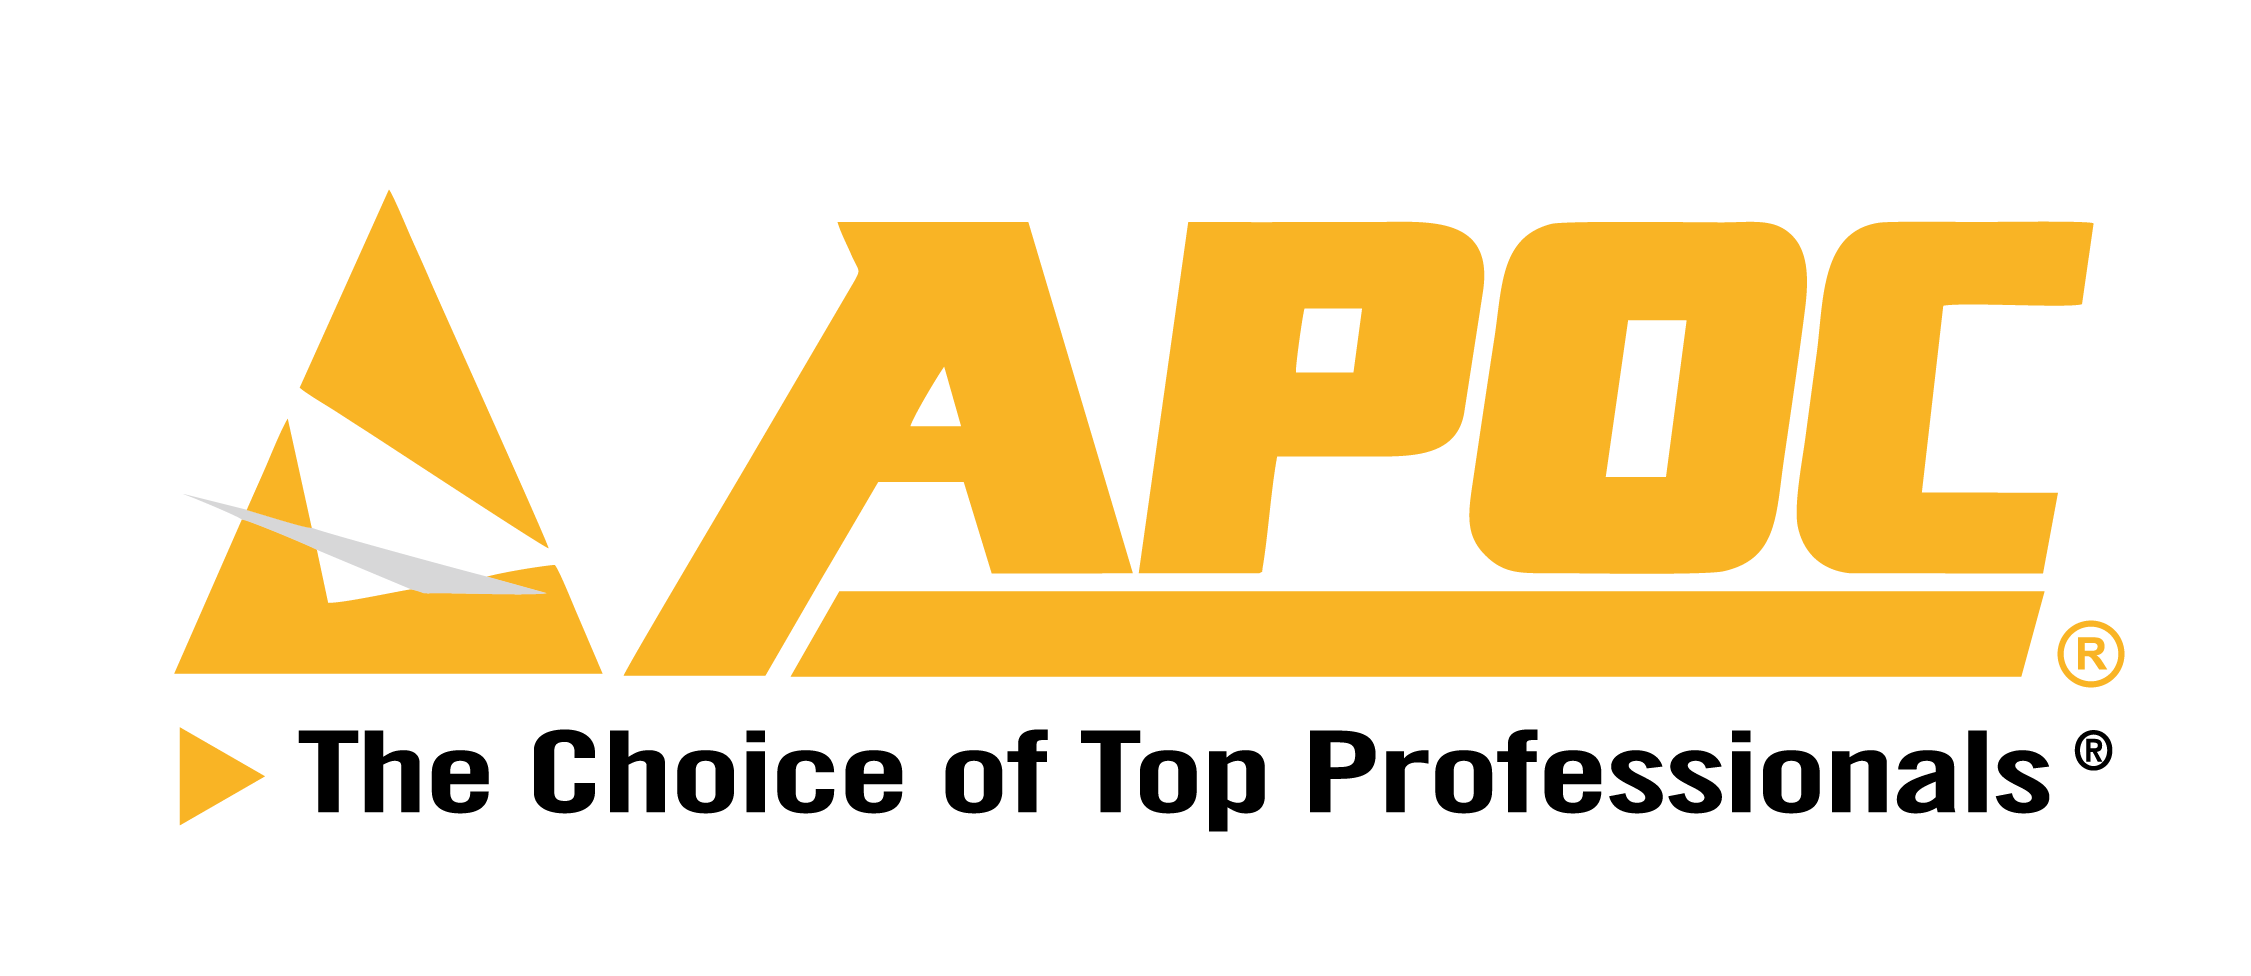 APOC Logo